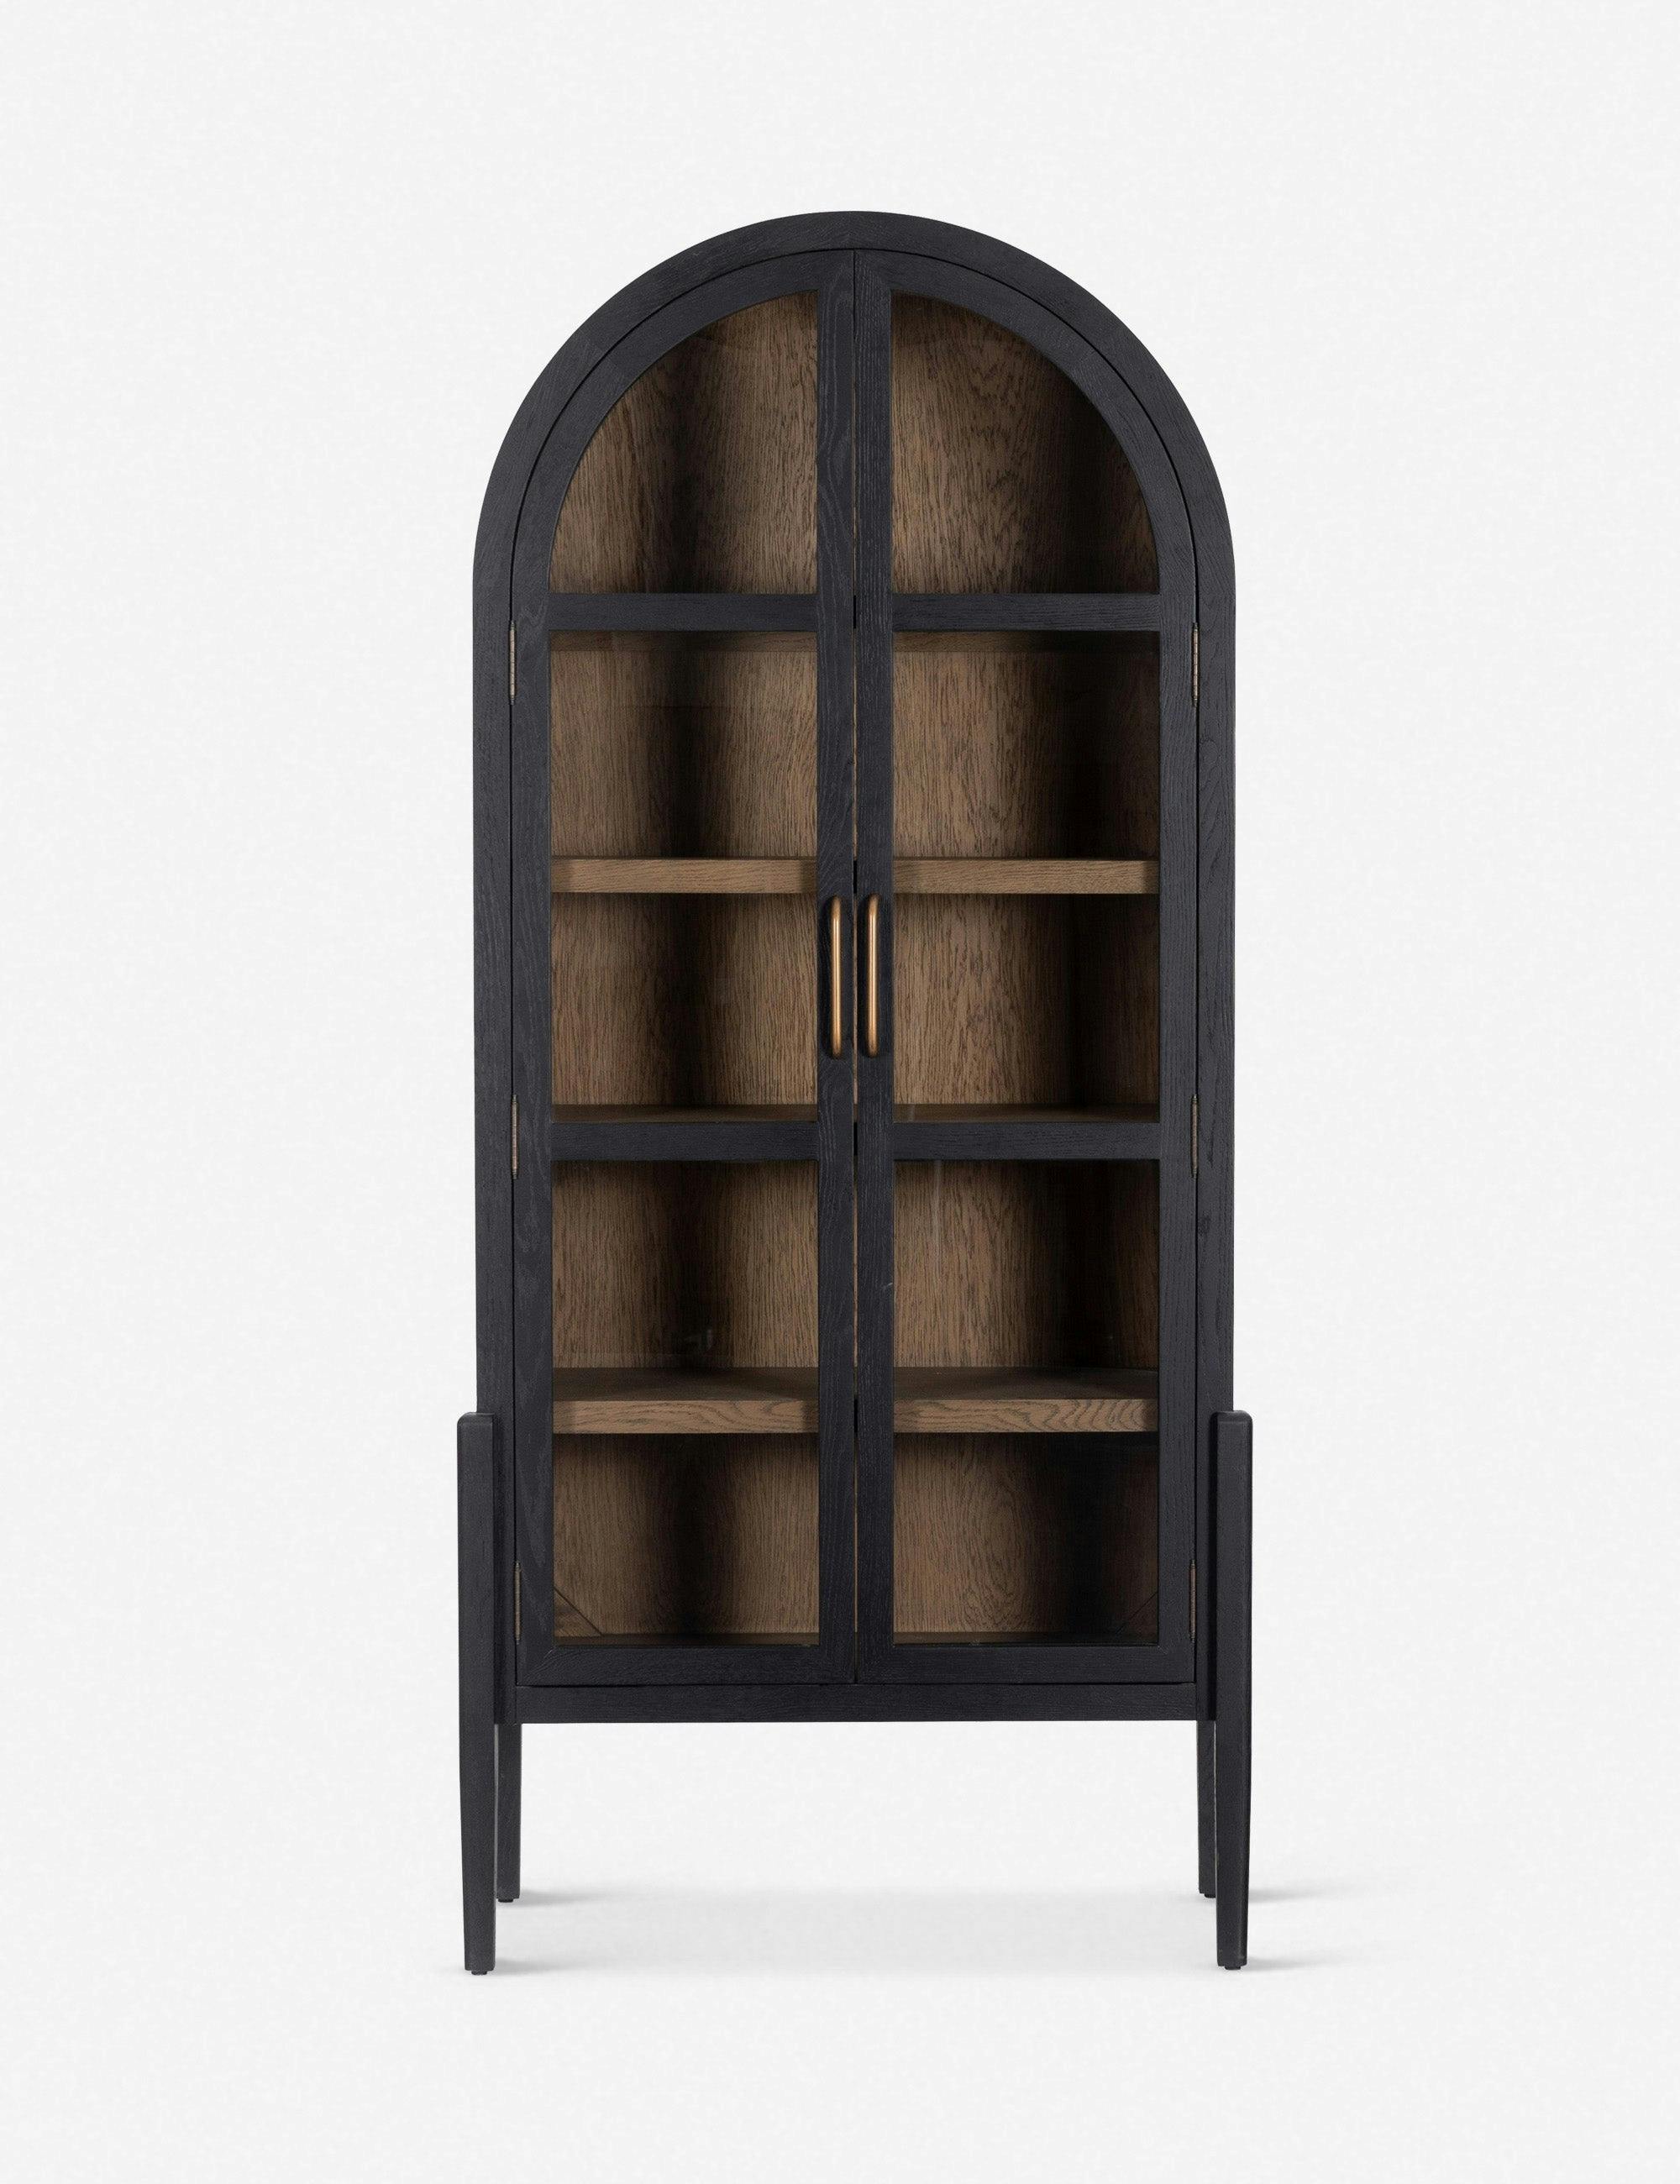 Contemporary Black Solid Oak 38" Adjustable Shelving Curio Cabinet